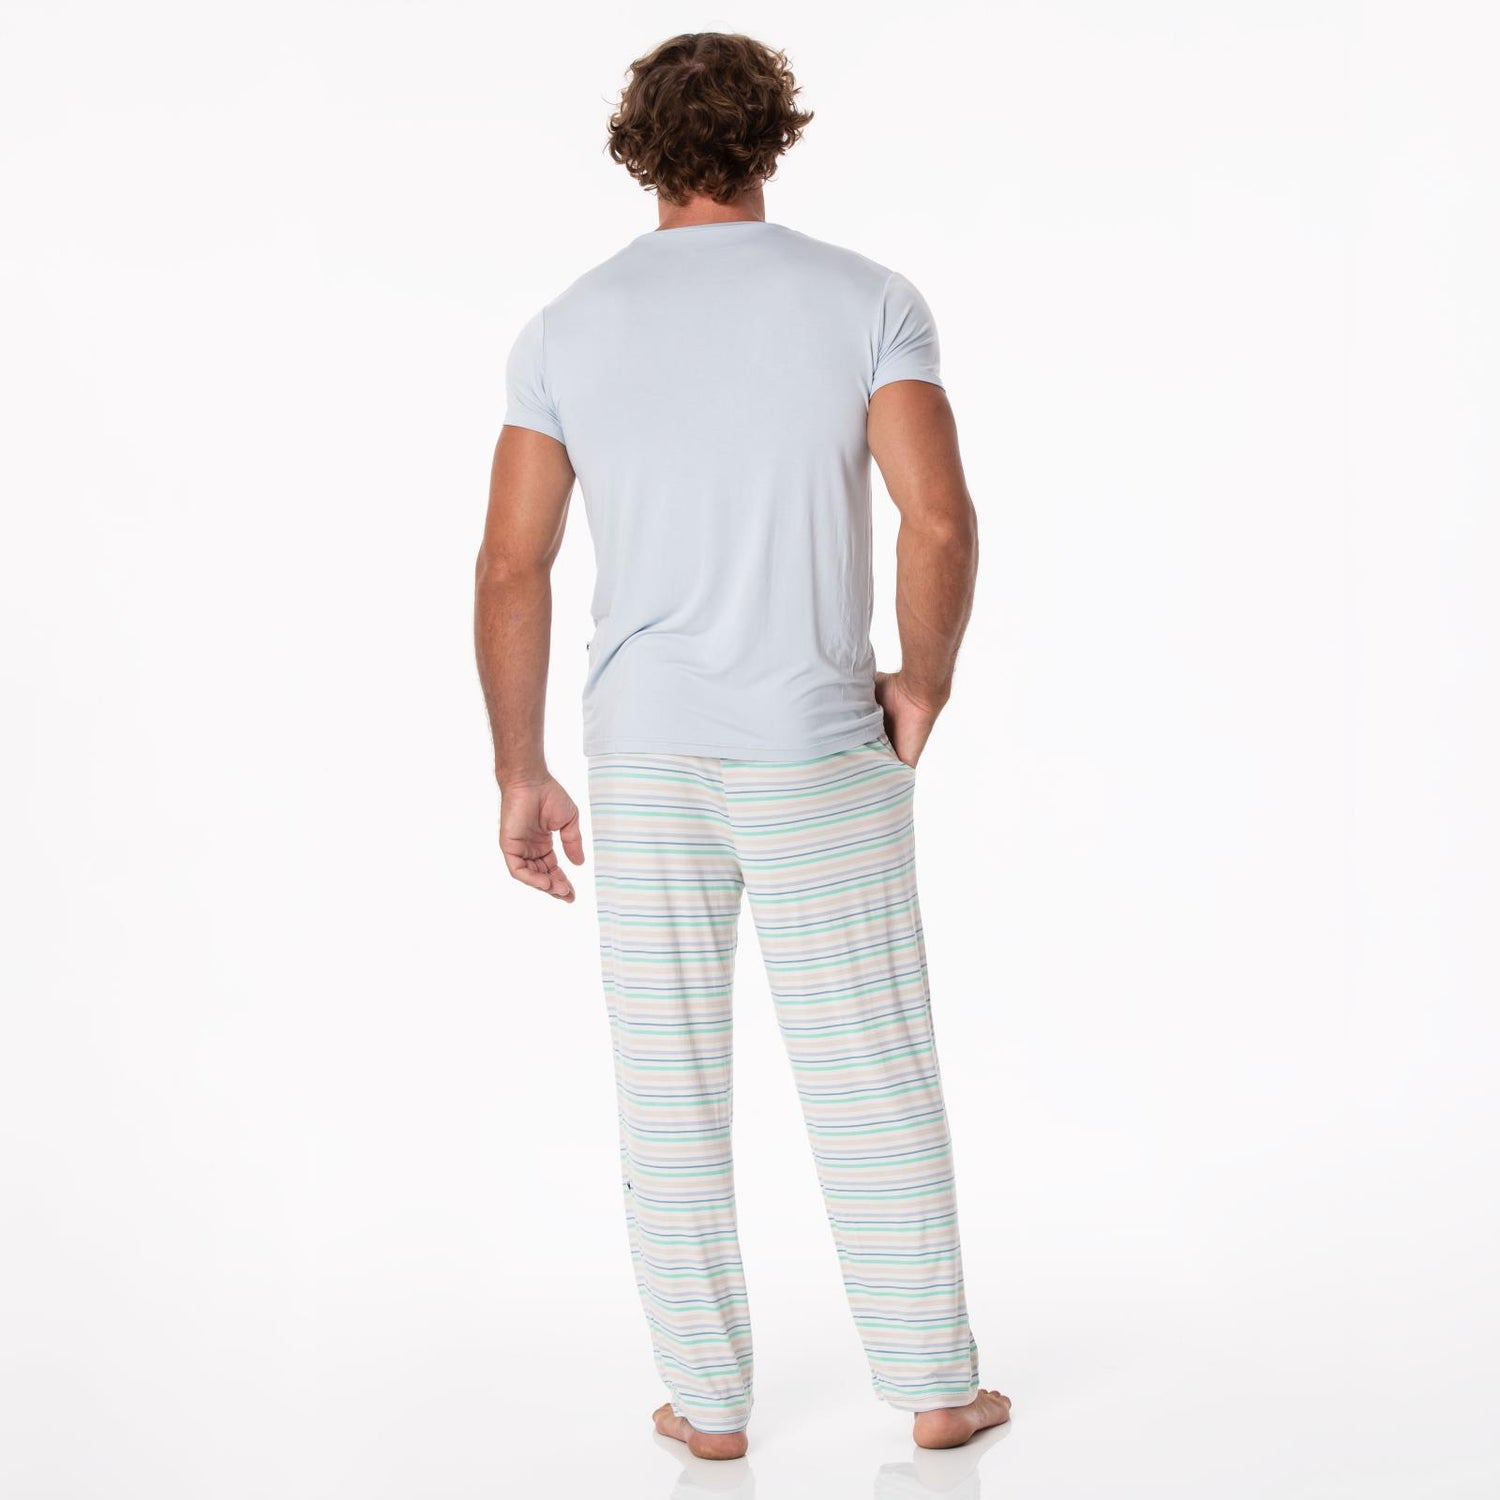 Men's Print Pajama Pants in Mythical Stripe